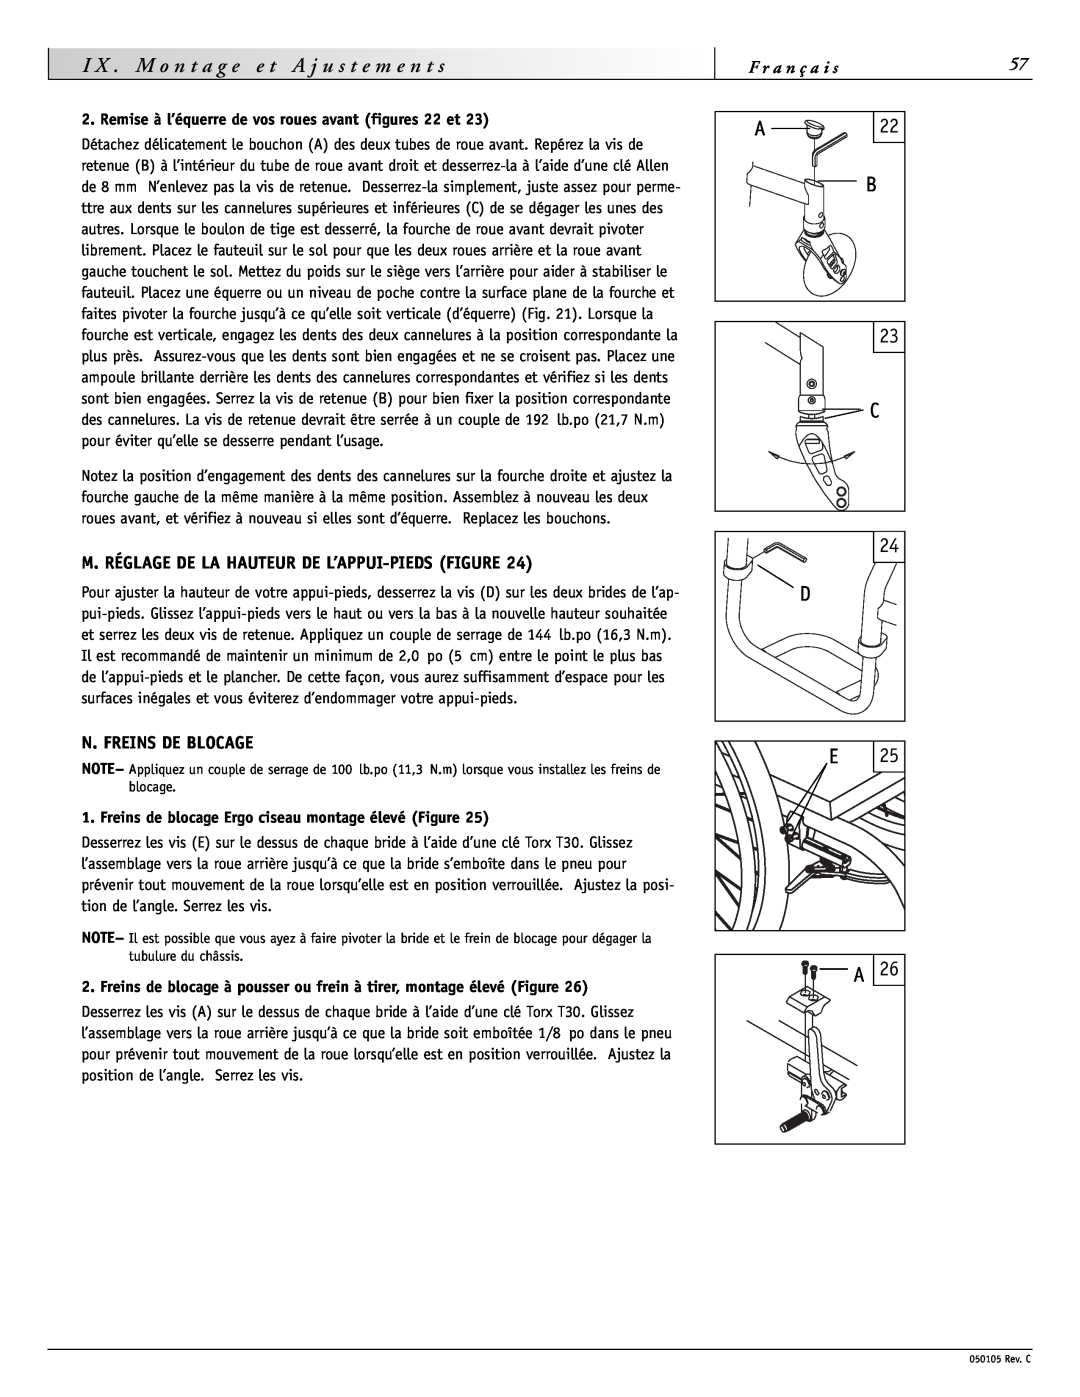 Sunrise Medical GT instruction manual M. Réglage De La Hauteur De L’Appui-Pieds Figure, N. Freins De Blocage 